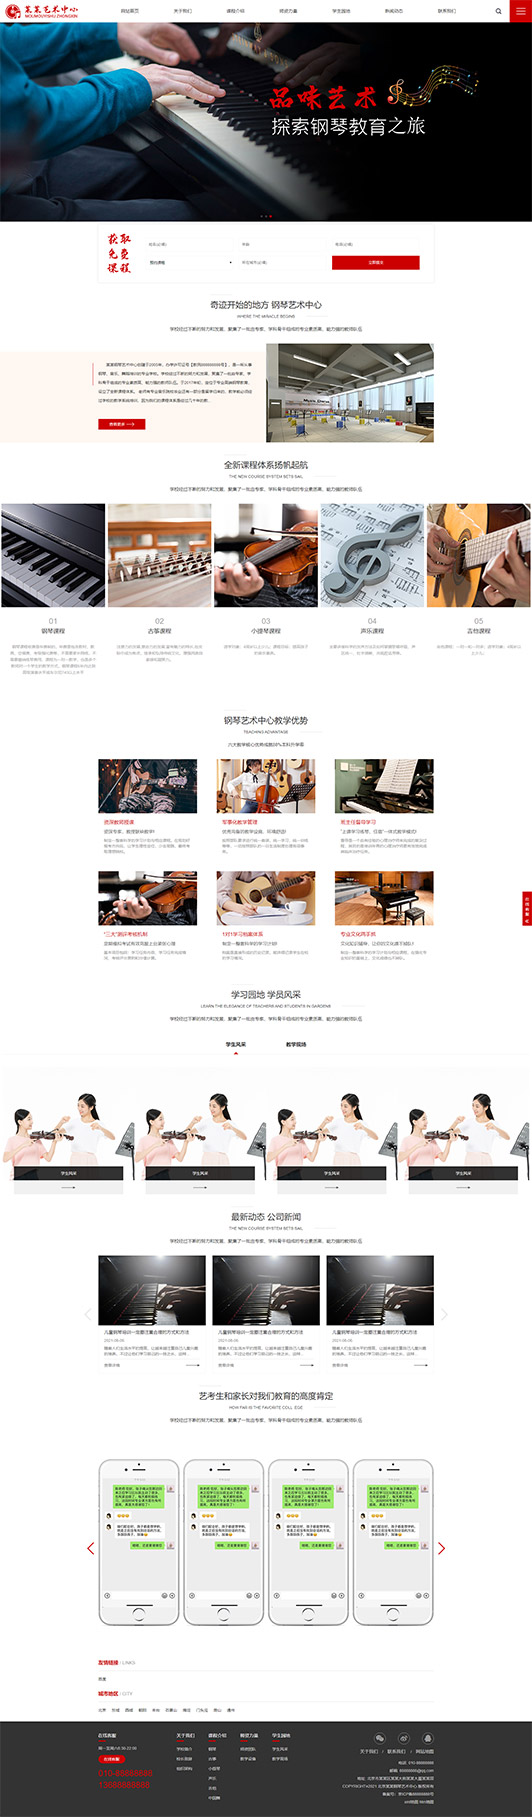 保定钢琴艺术培训公司响应式企业网站